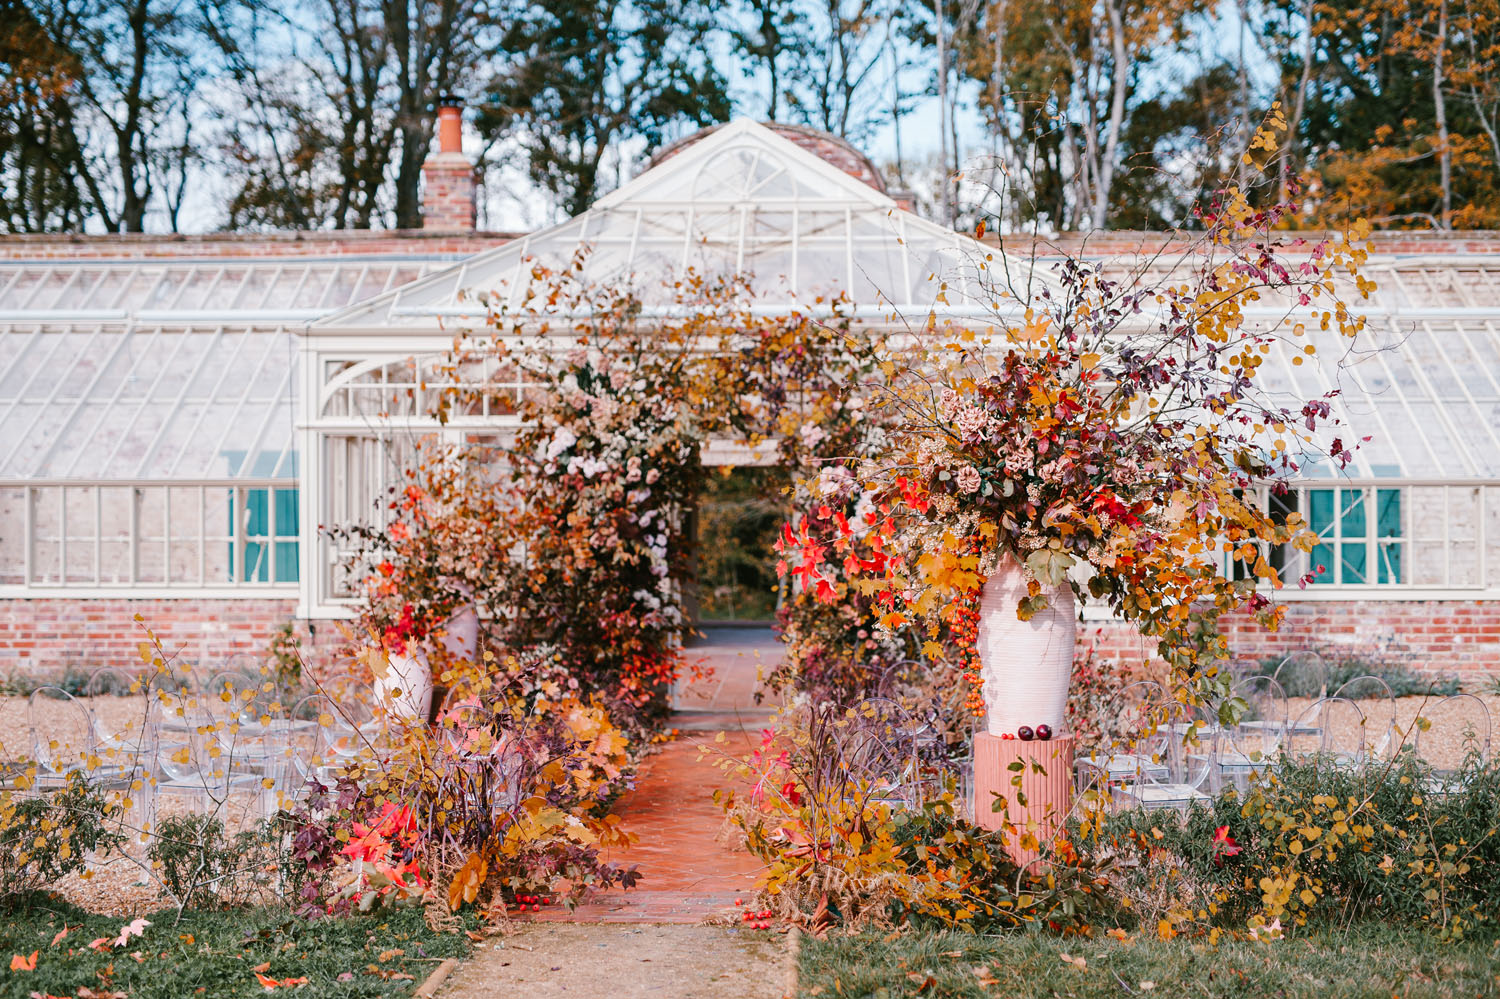 Autumn Glasshouse Wedding Inspiration